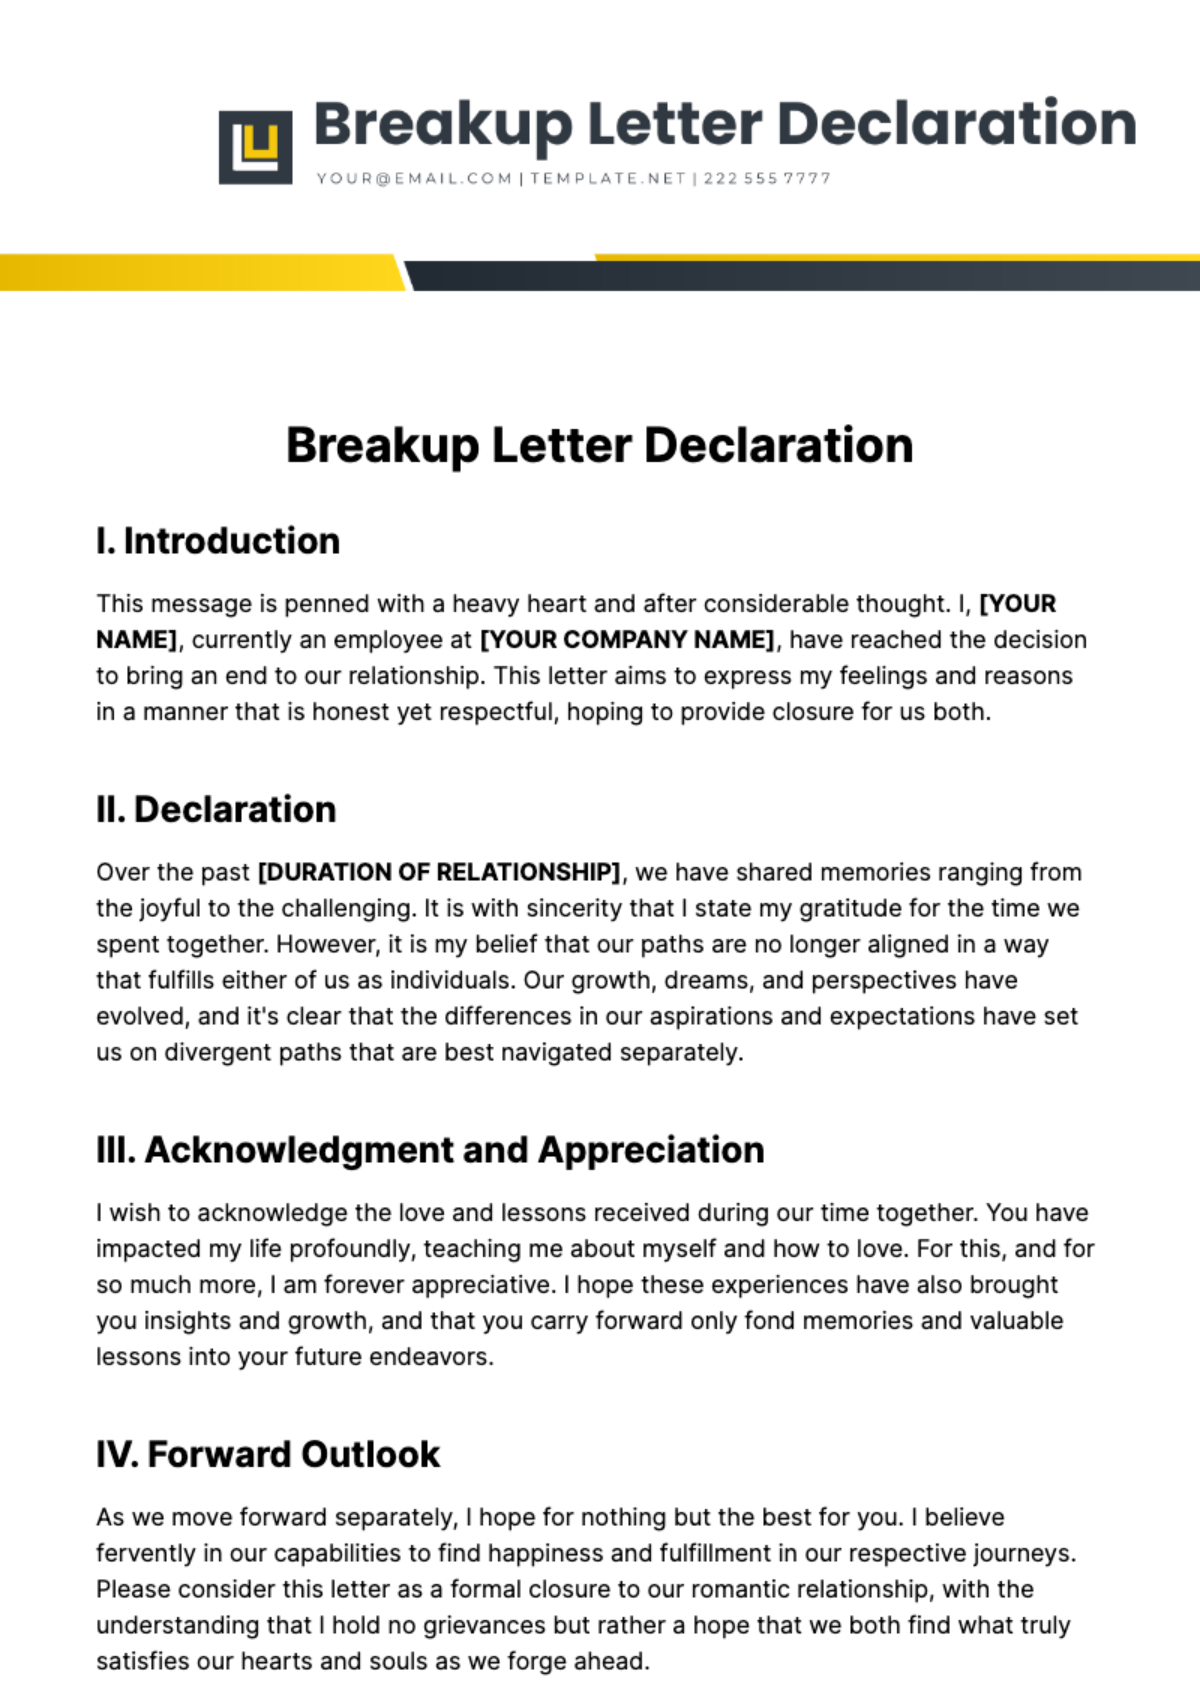 Breakup Letter Declaration Template